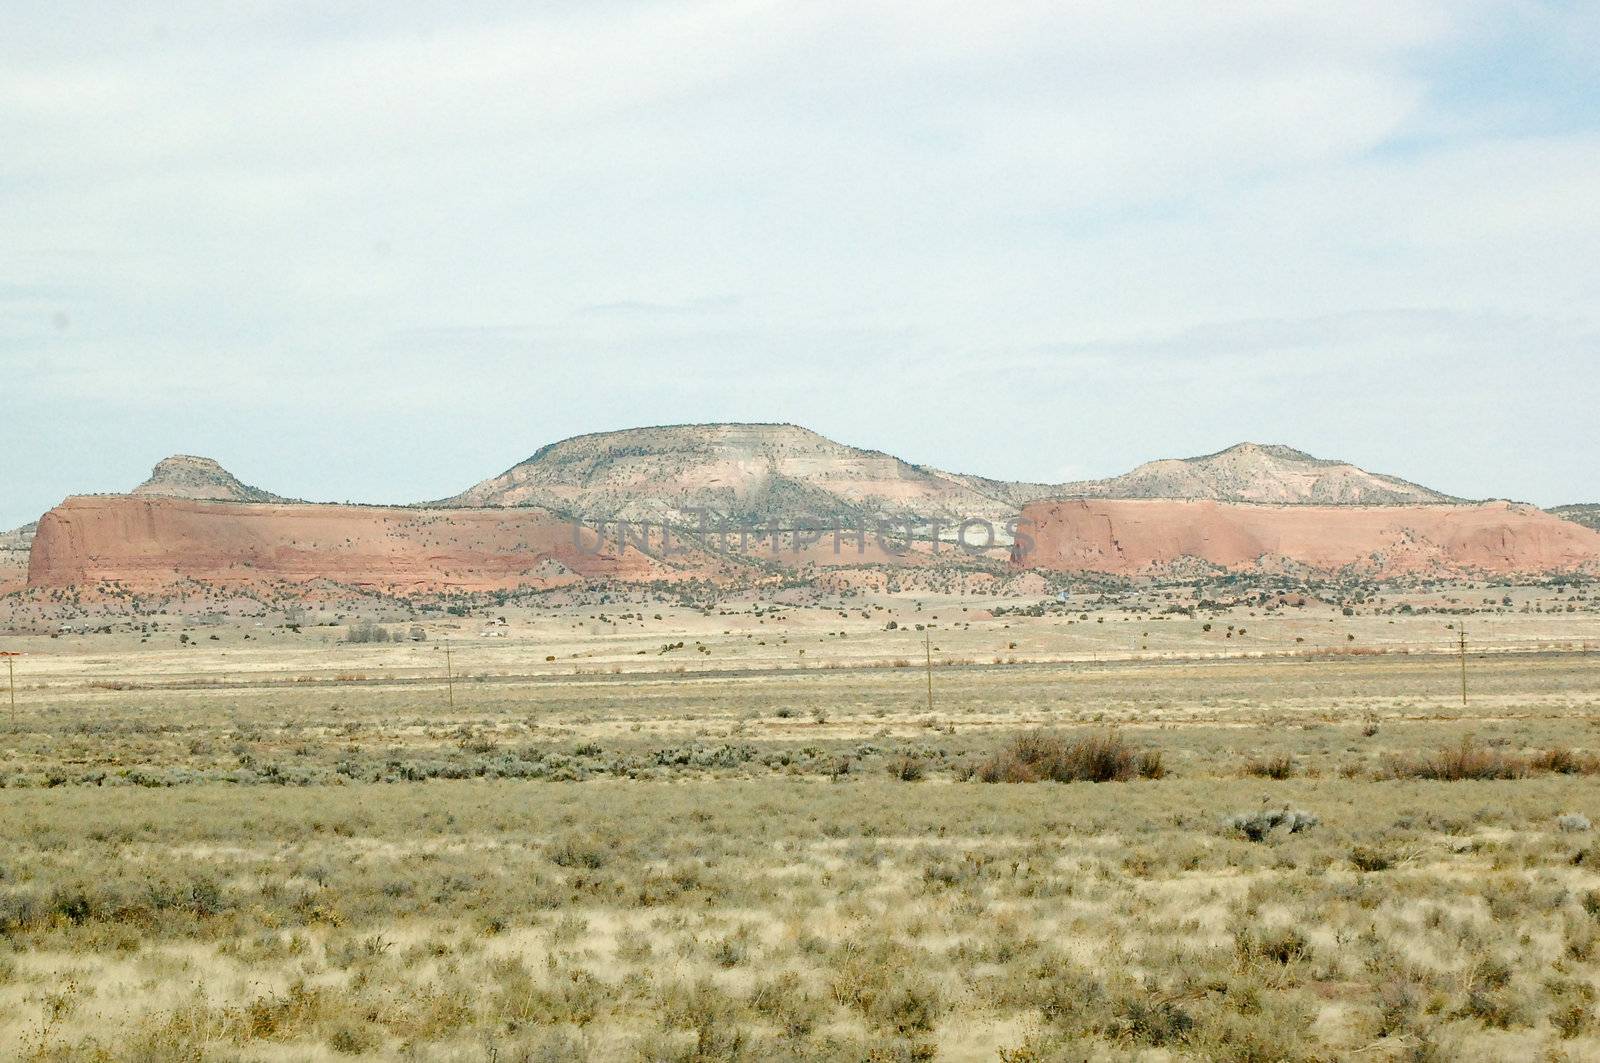 Hills in the desert